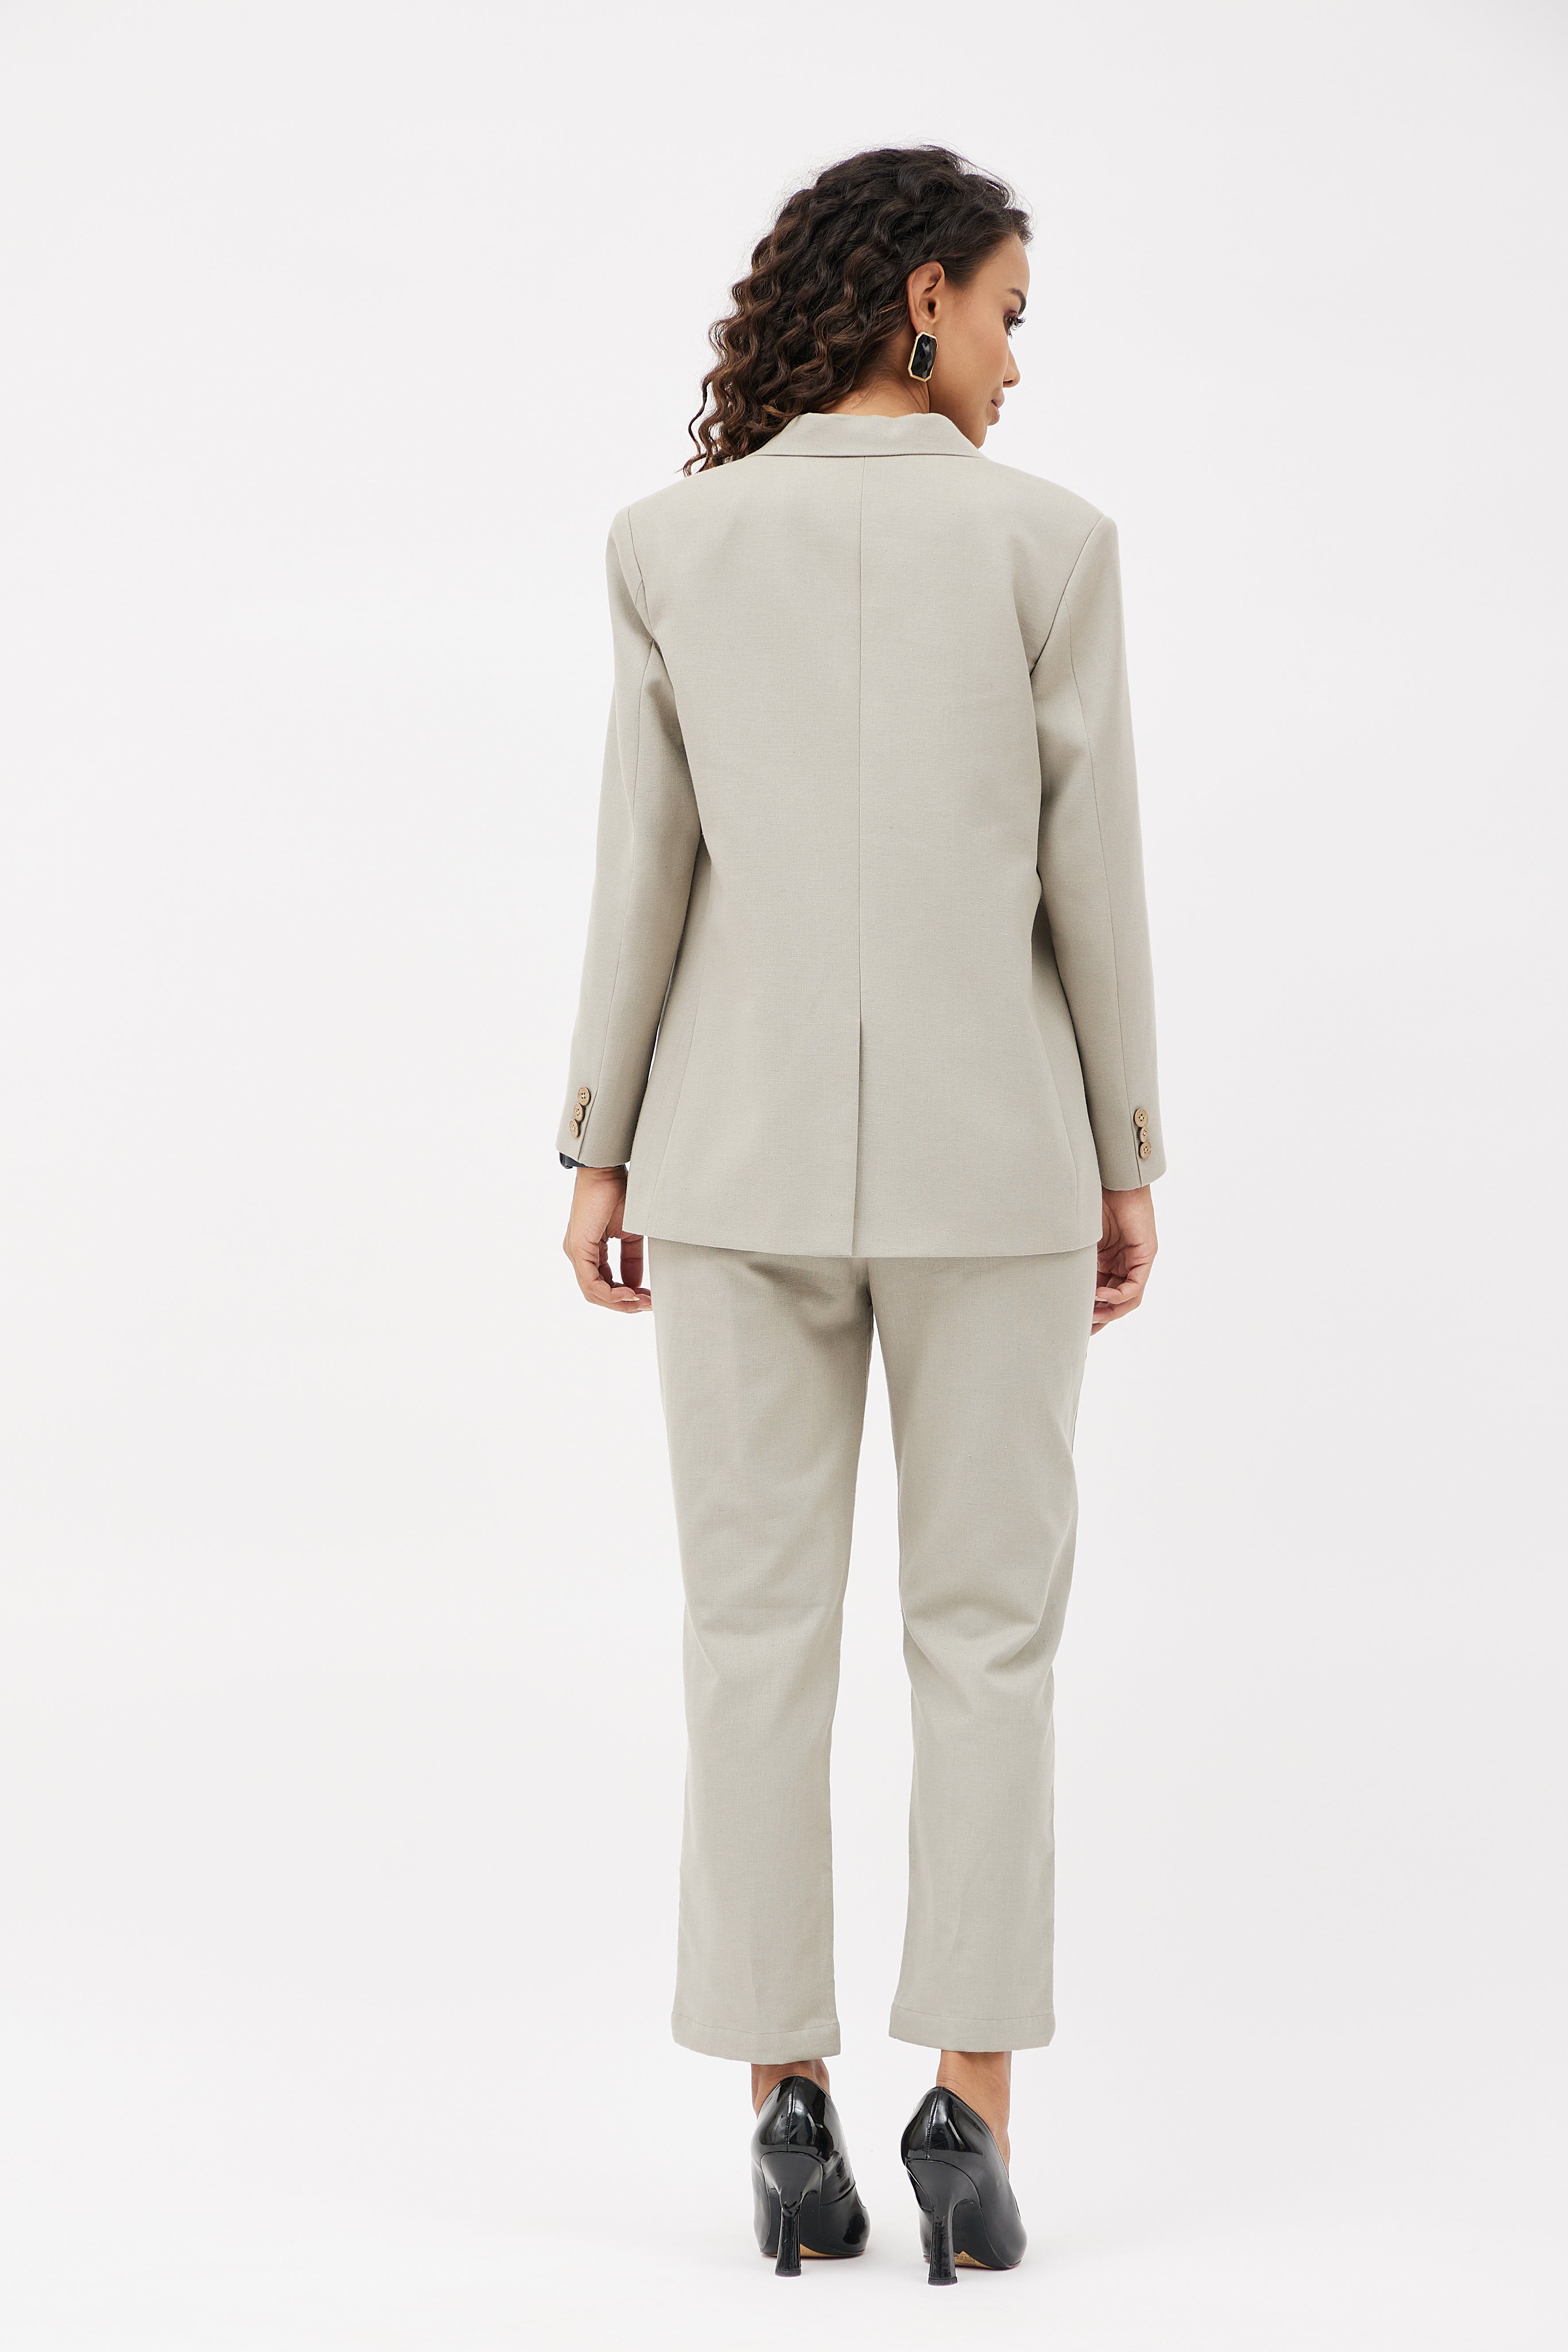 Women's Alderley Slim Leg Trouser Suit, Grey Sharkskin - SHOP ALL WORKWEAR  from Simon Jersey UK